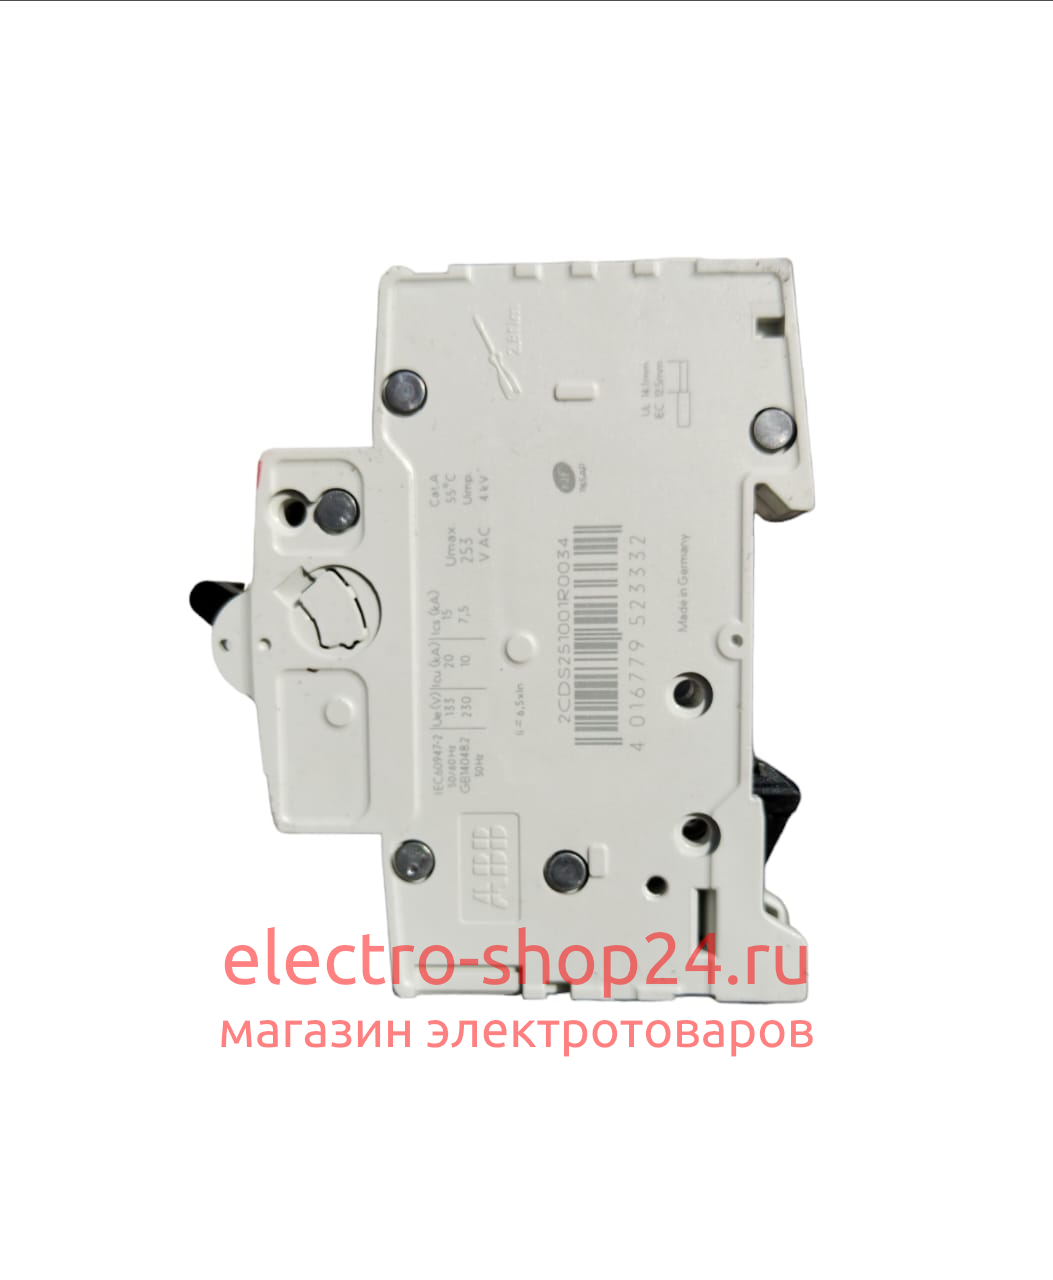 S201 C1 Автоматический выключатель 1-полюсный 1А 6кА (хар-ка C) ABB 2CDS251001R0014 2CDS251001R0014 - магазин электротехники Electroshop